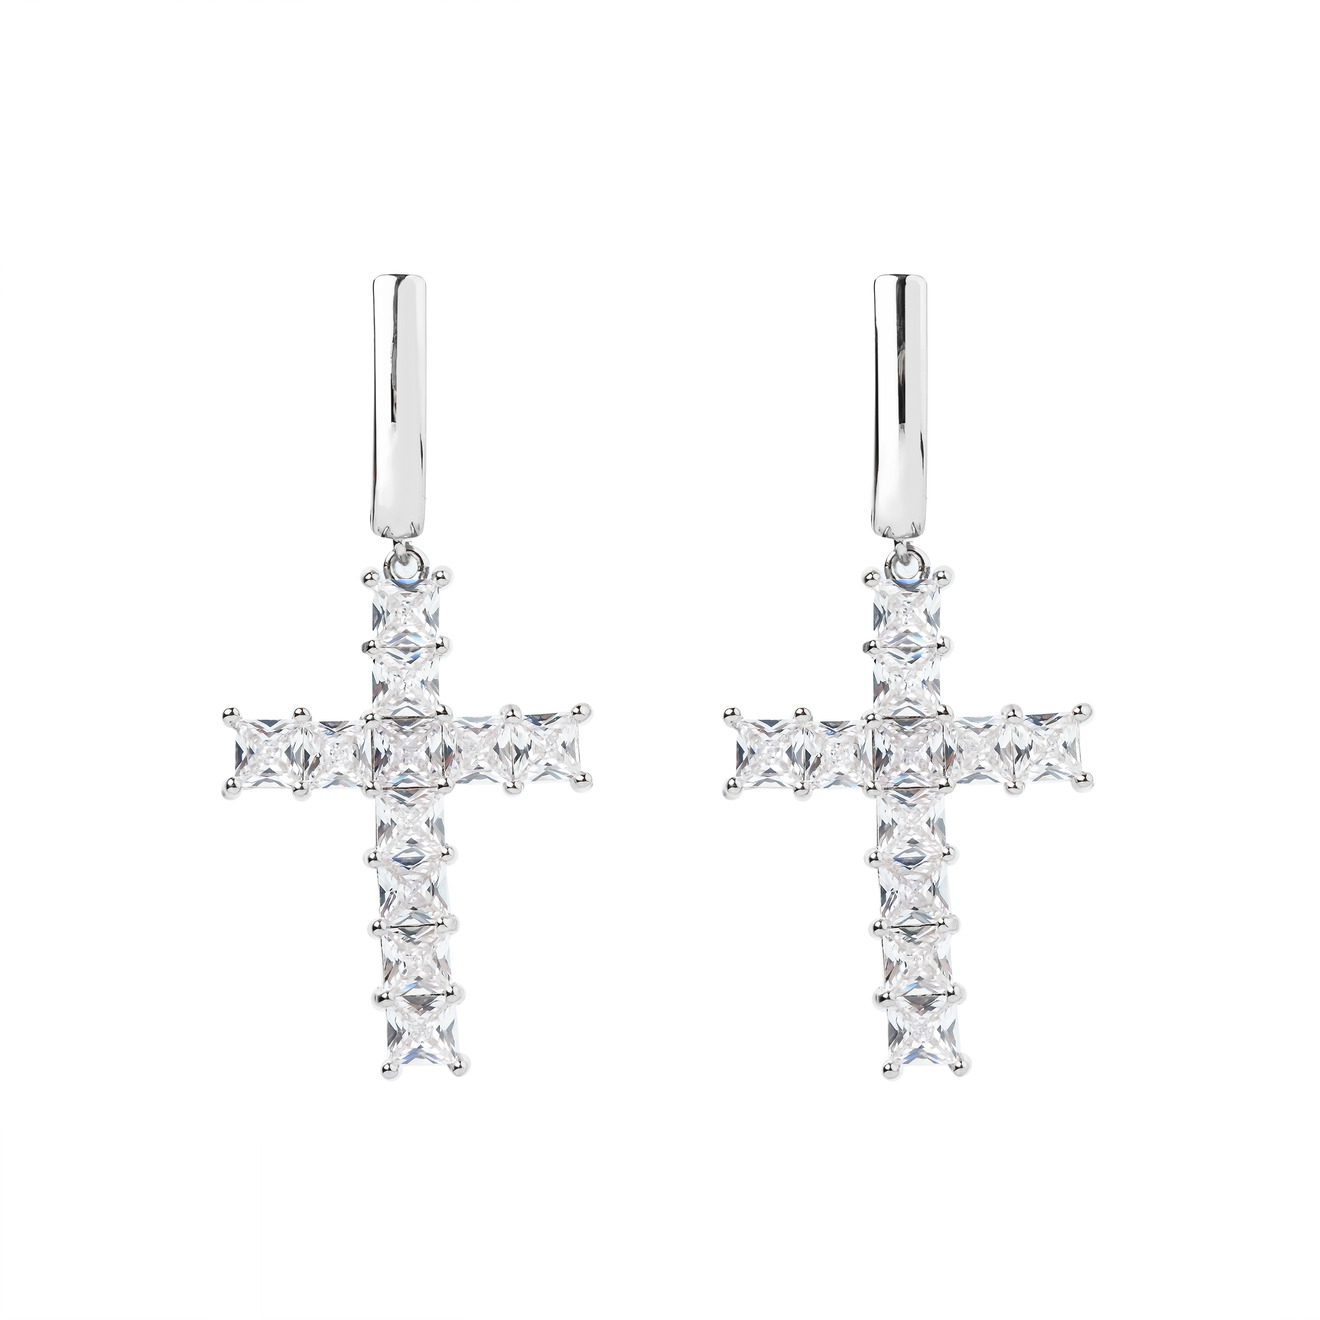 Herald Percy Серебристые серьги-кресты с кристаллами herald percy серебристые серьги звезды с кристаллами и белыми бусинами